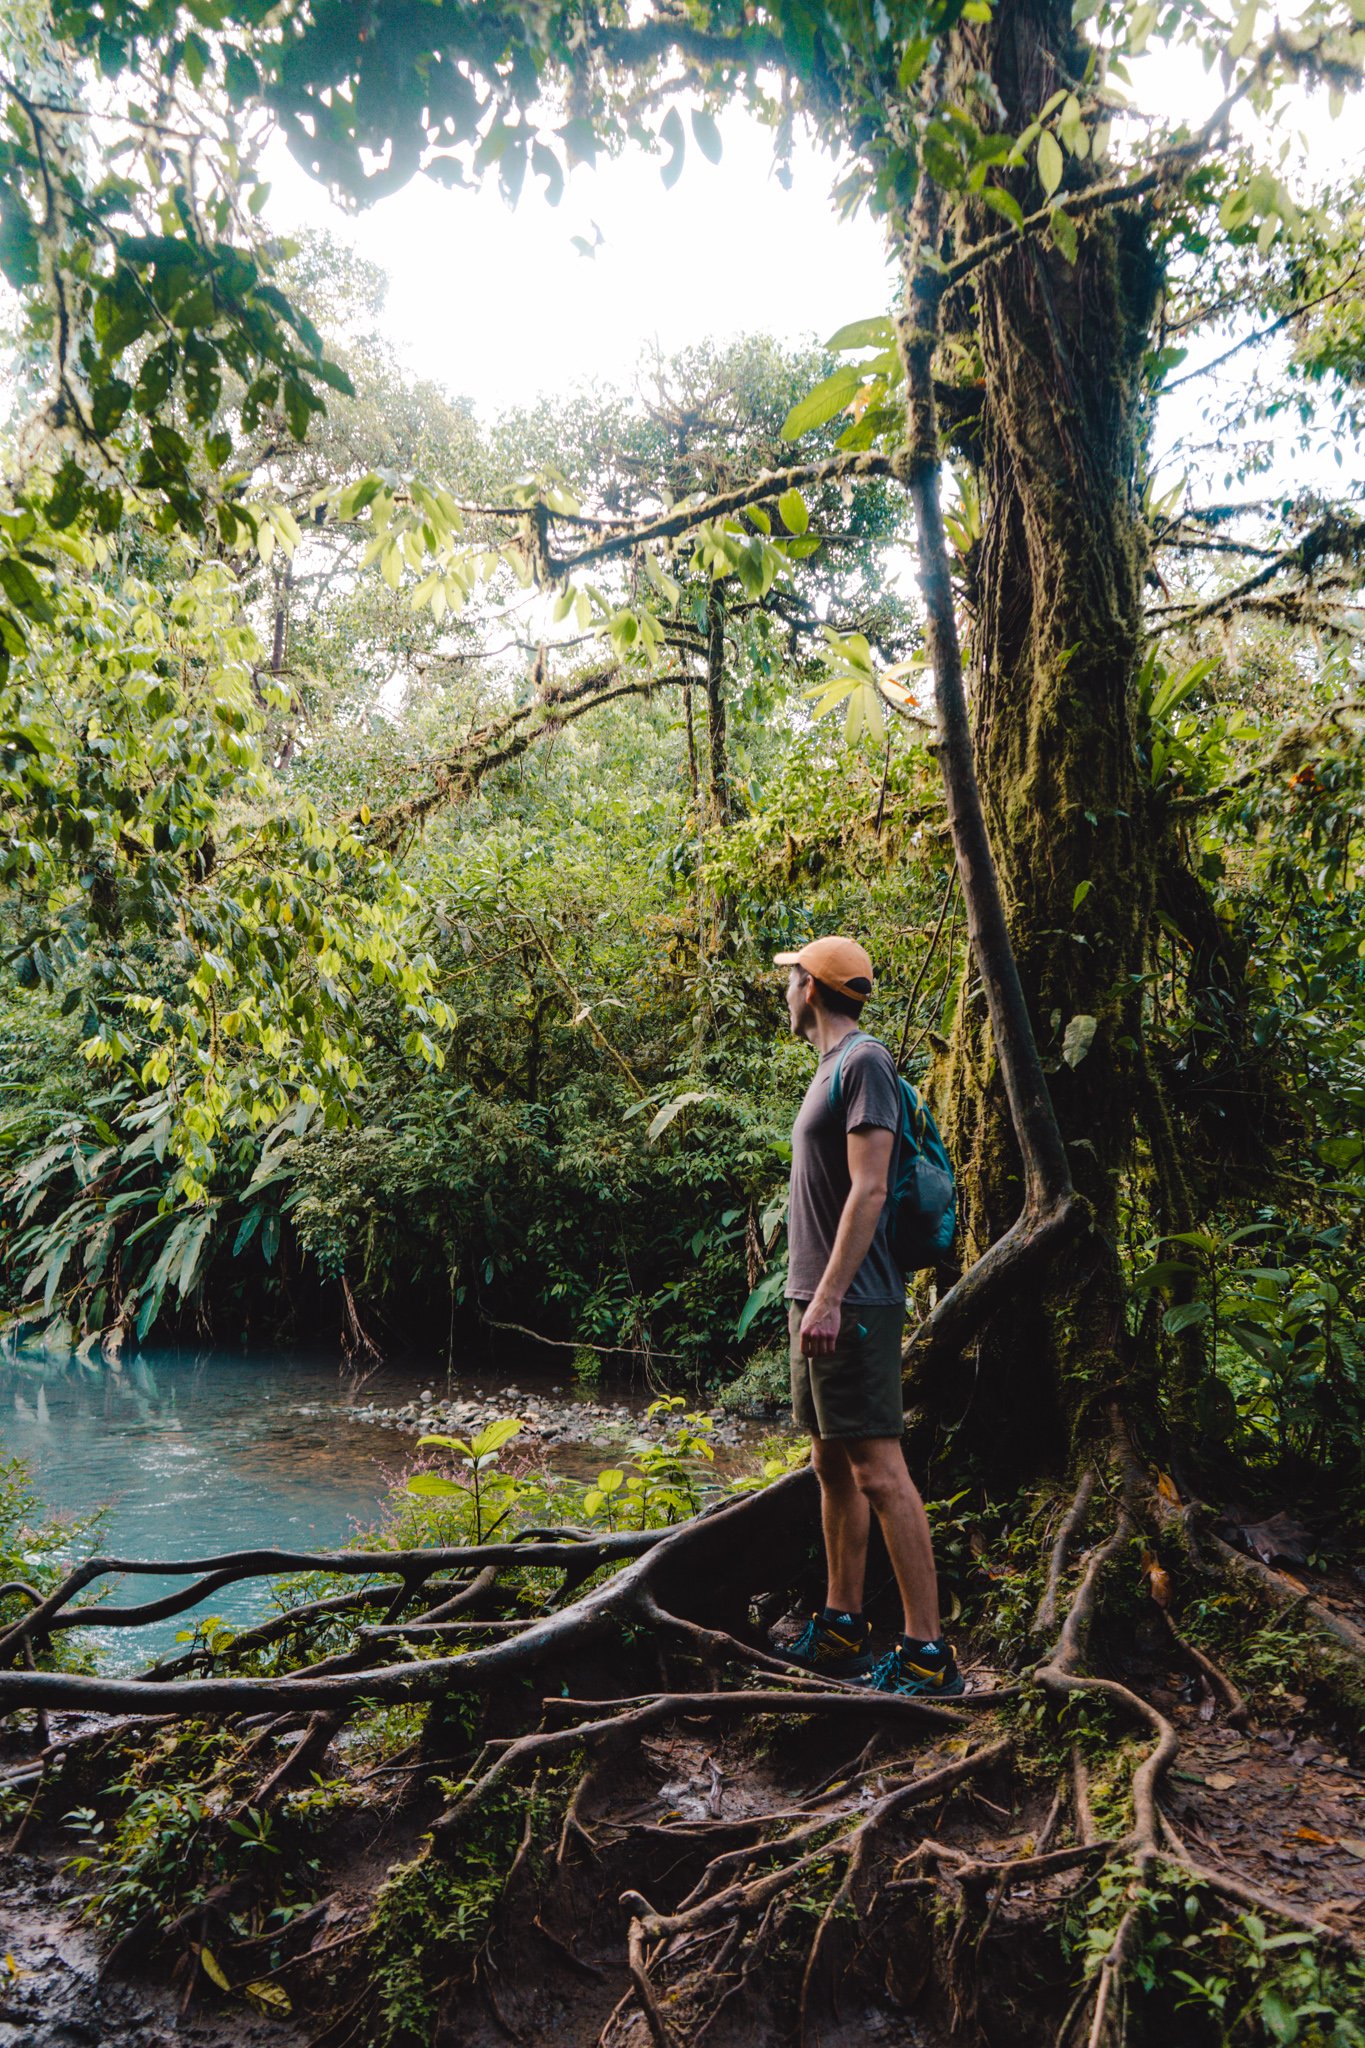 exploring the jungles in La Fortuna, Costa Rica